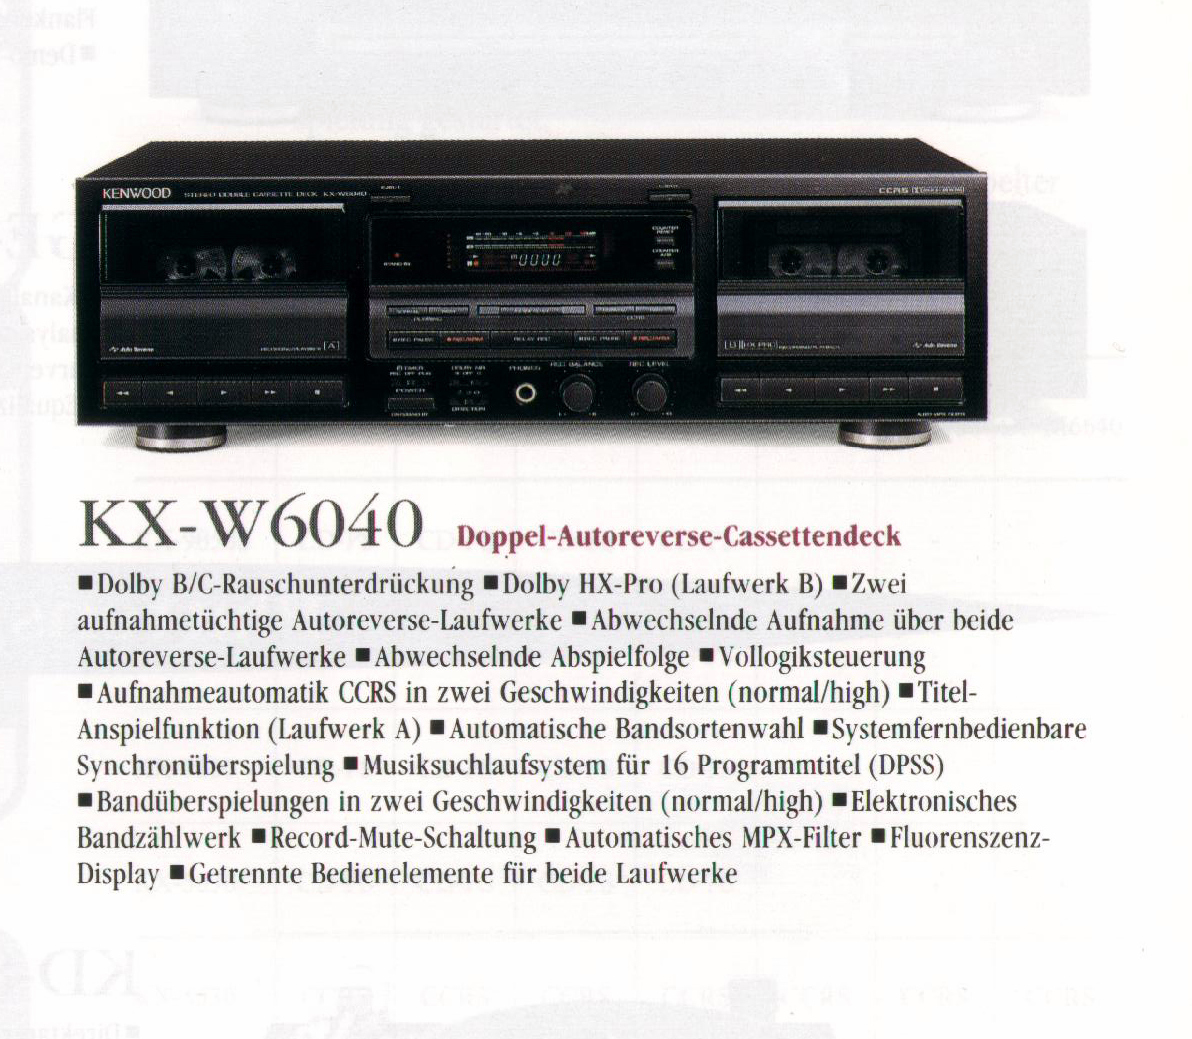 Kenwood KX-W 6040-Prospekt-1993.jpg